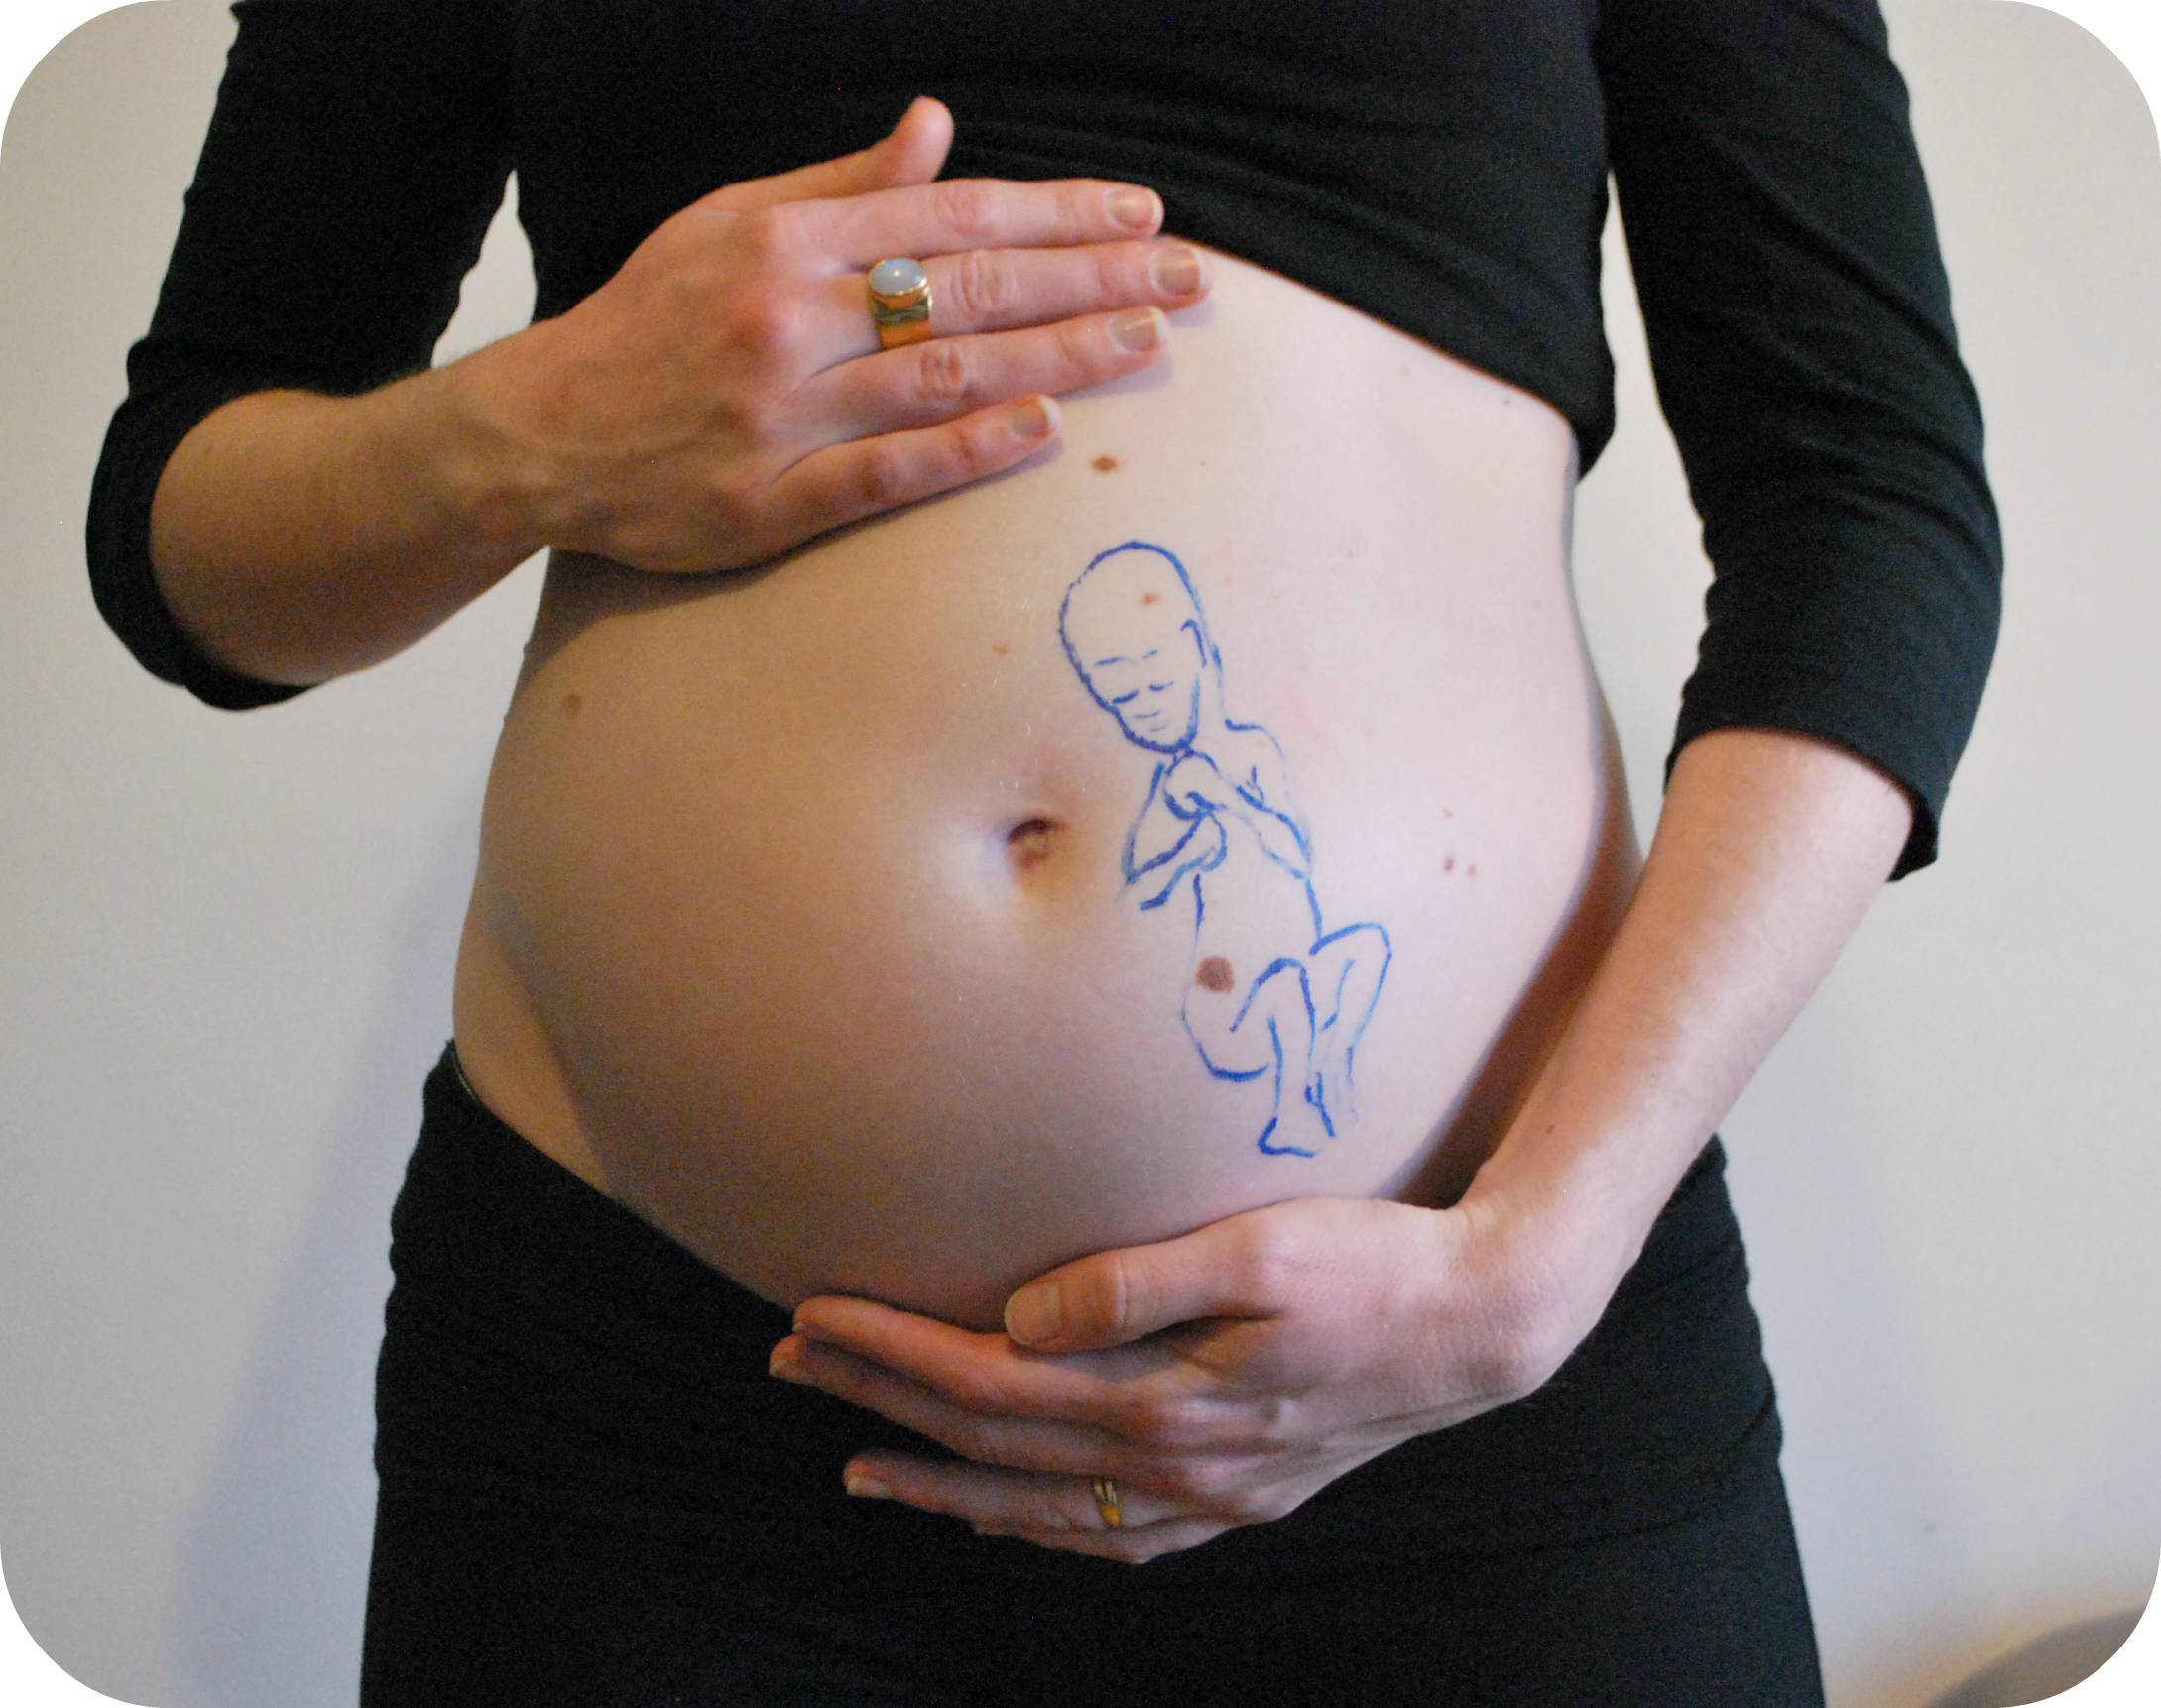 18 неделя беременности: ощущения, что происходит, узи